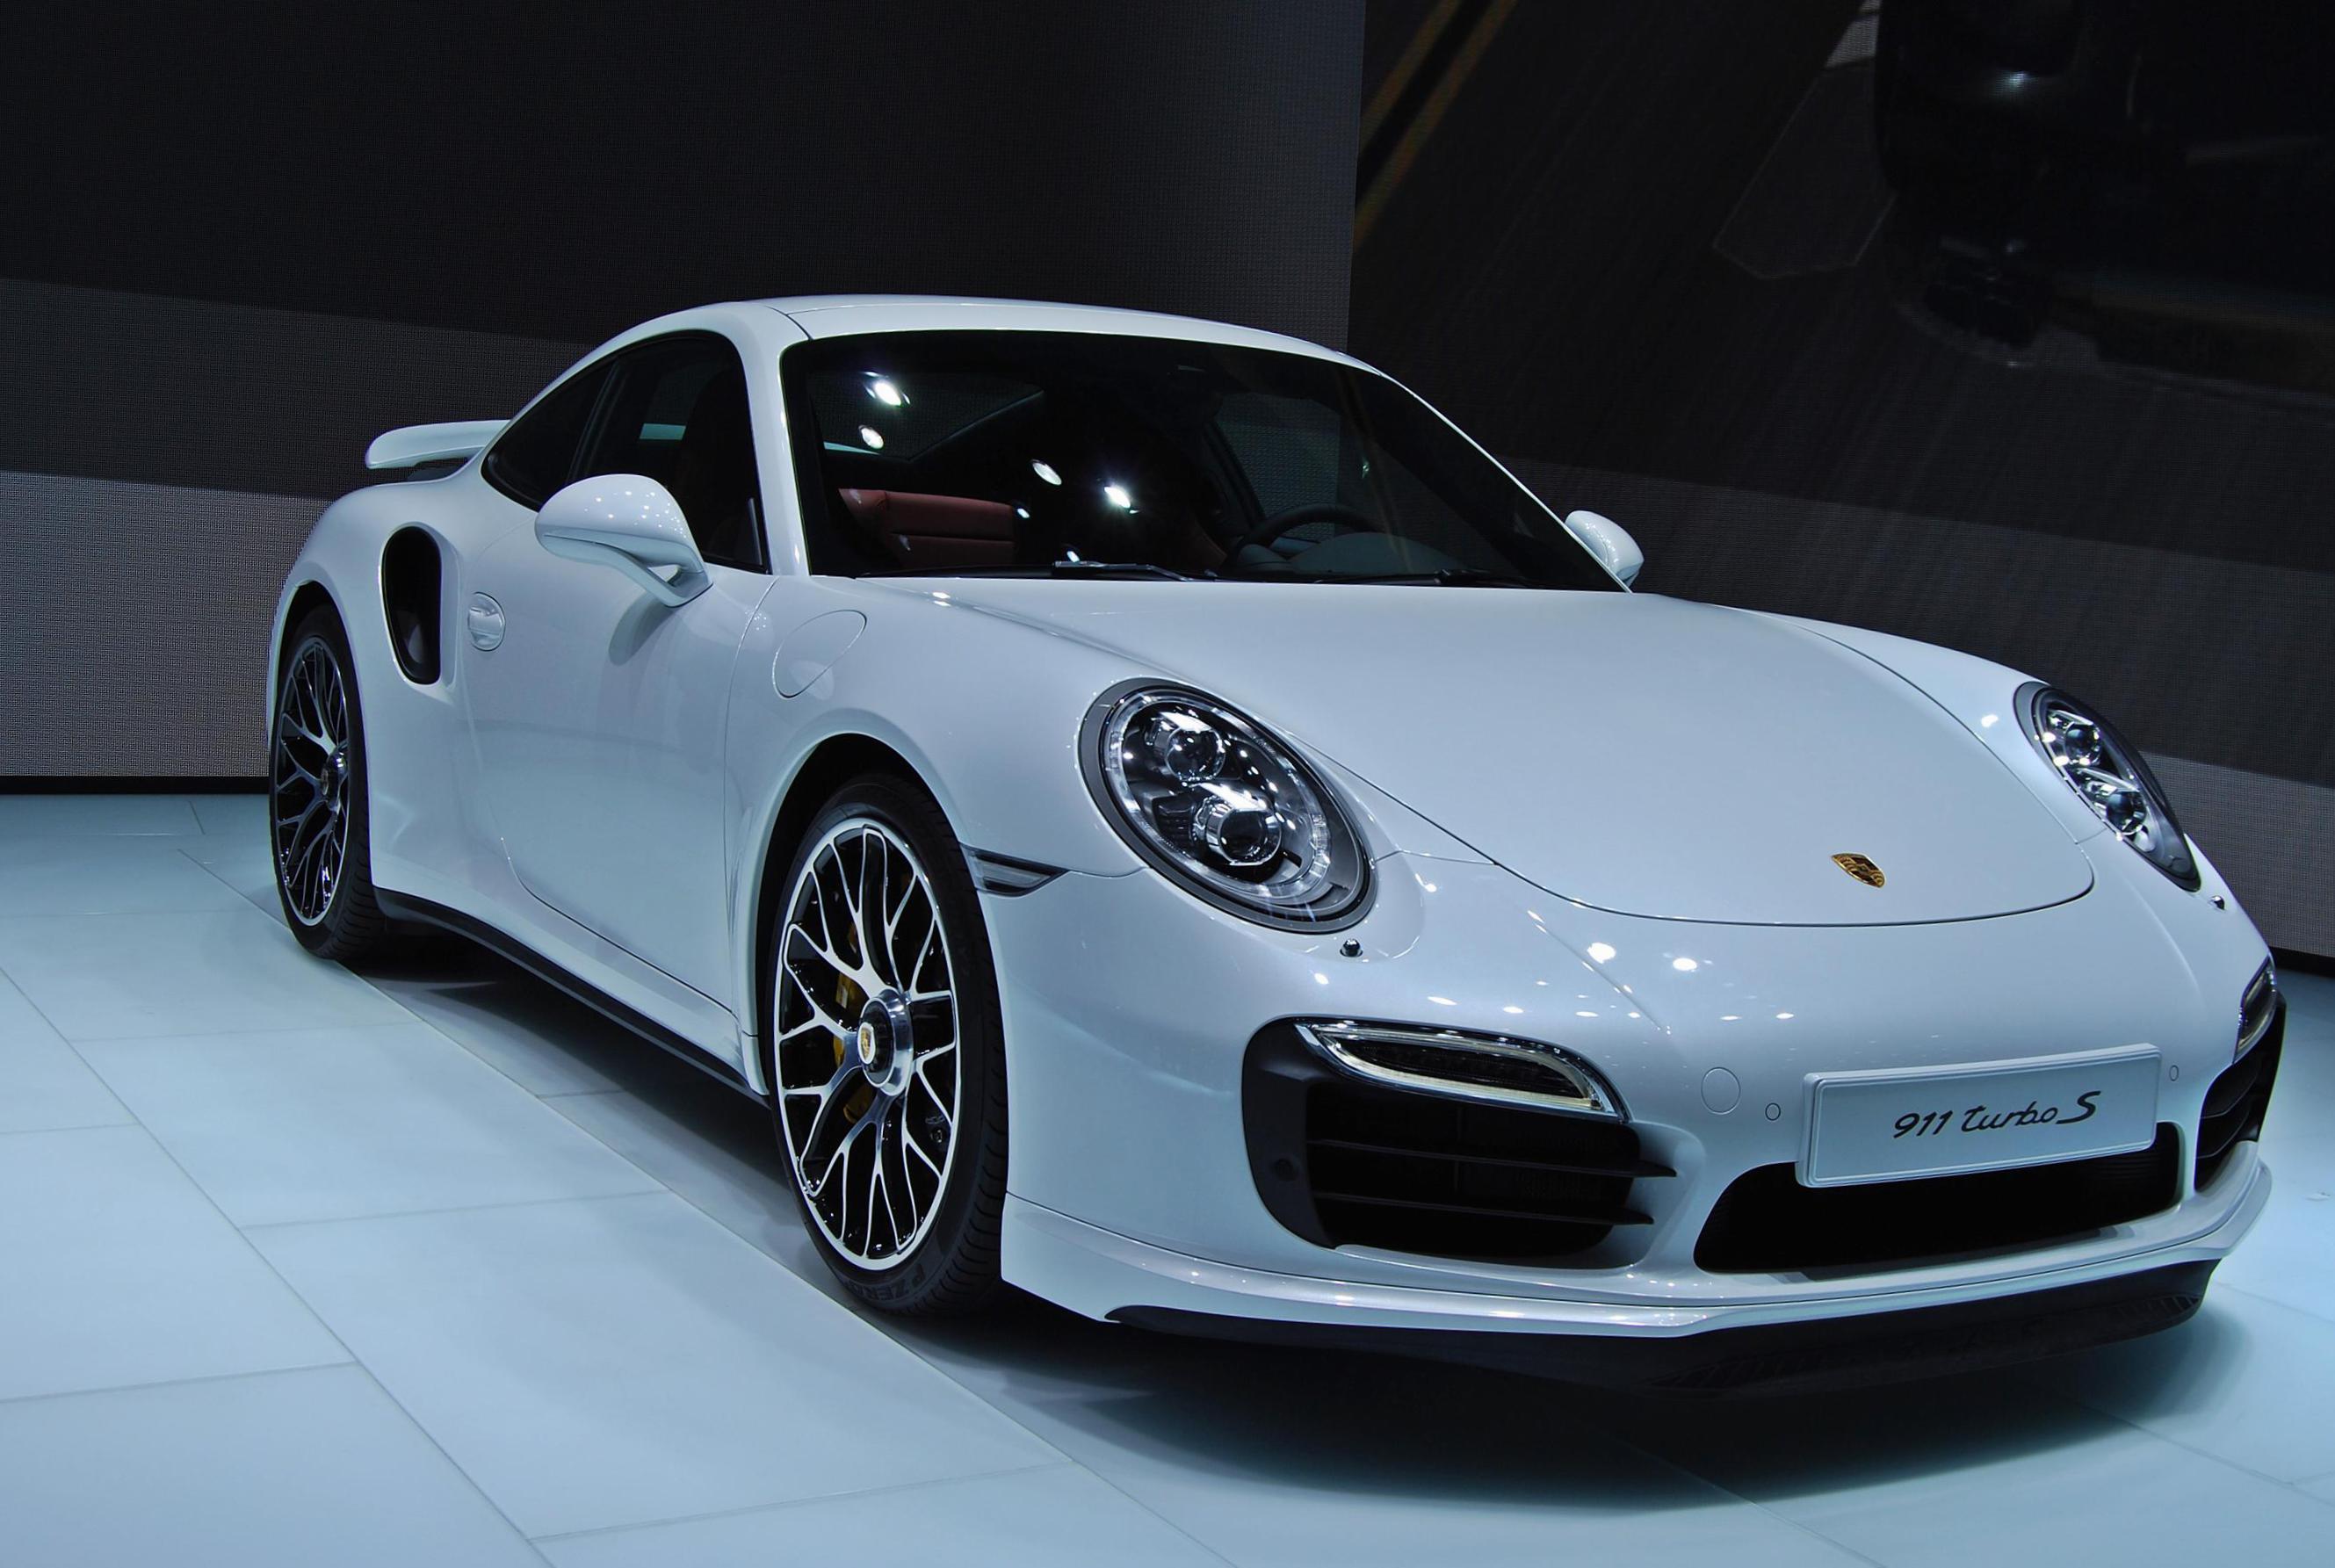 Find Porsche 911 Turbo